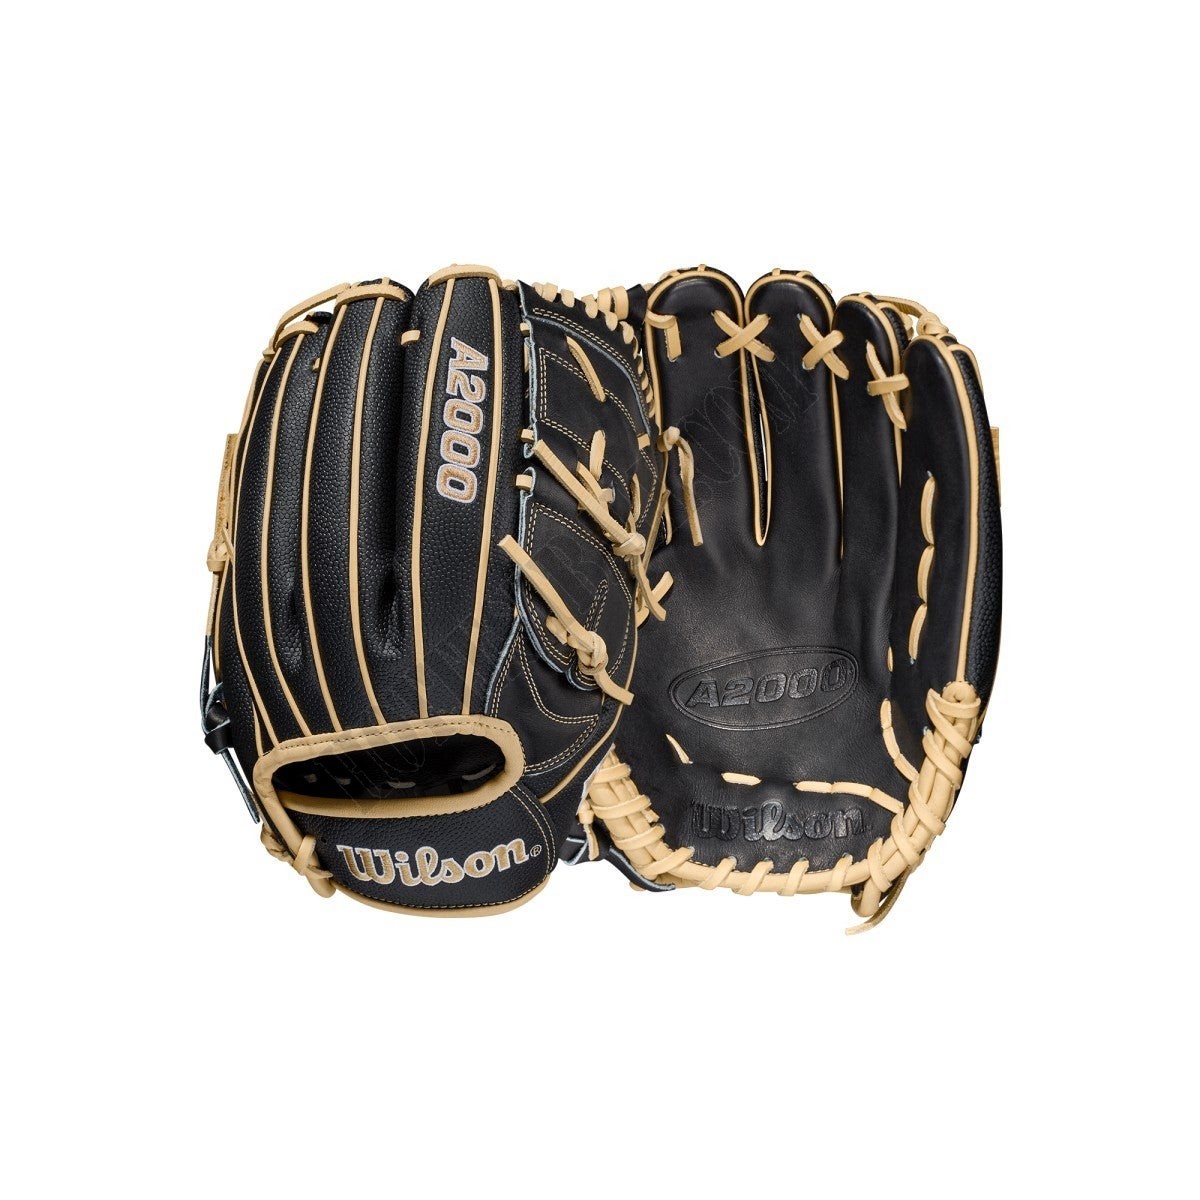 2021 A2000 B2SS 12" Pitcher's Baseball Glove ● Wilson Promotions - 2021 A2000 B2SS 12" Pitcher's Baseball Glove ● Wilson Promotions